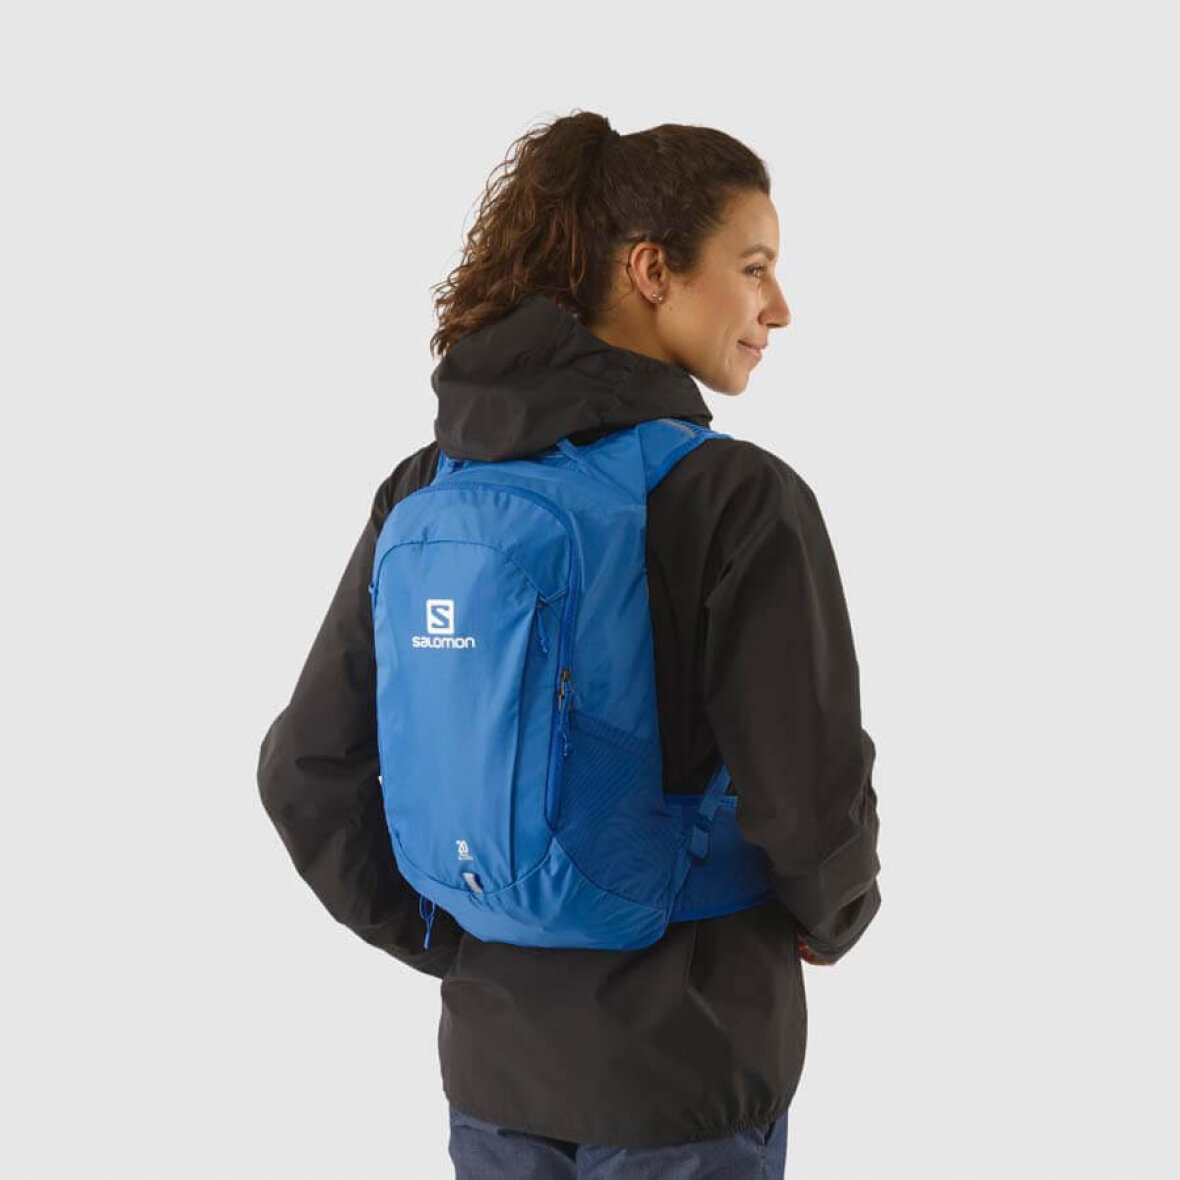 Salomon Trailblazer 20 Nebulas Blue - Let rygsæk til livsstil - Køb den he